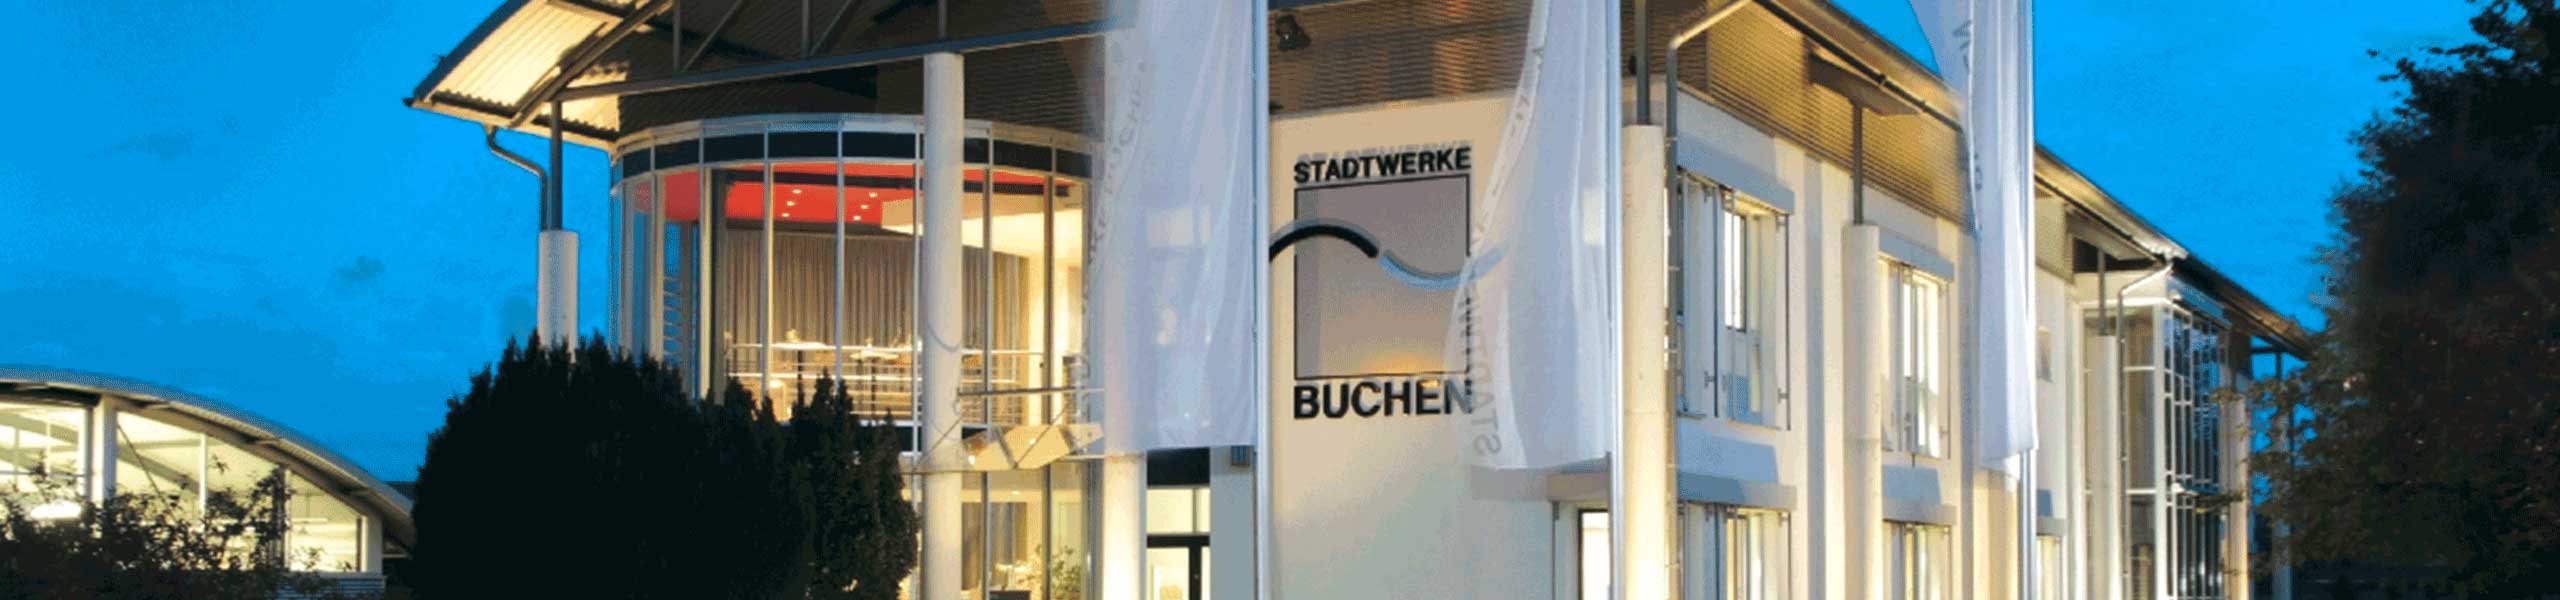 Stadtwerke Buchen GmbH & Co KG - Instandhaltungsmanagement für Kundenstationen